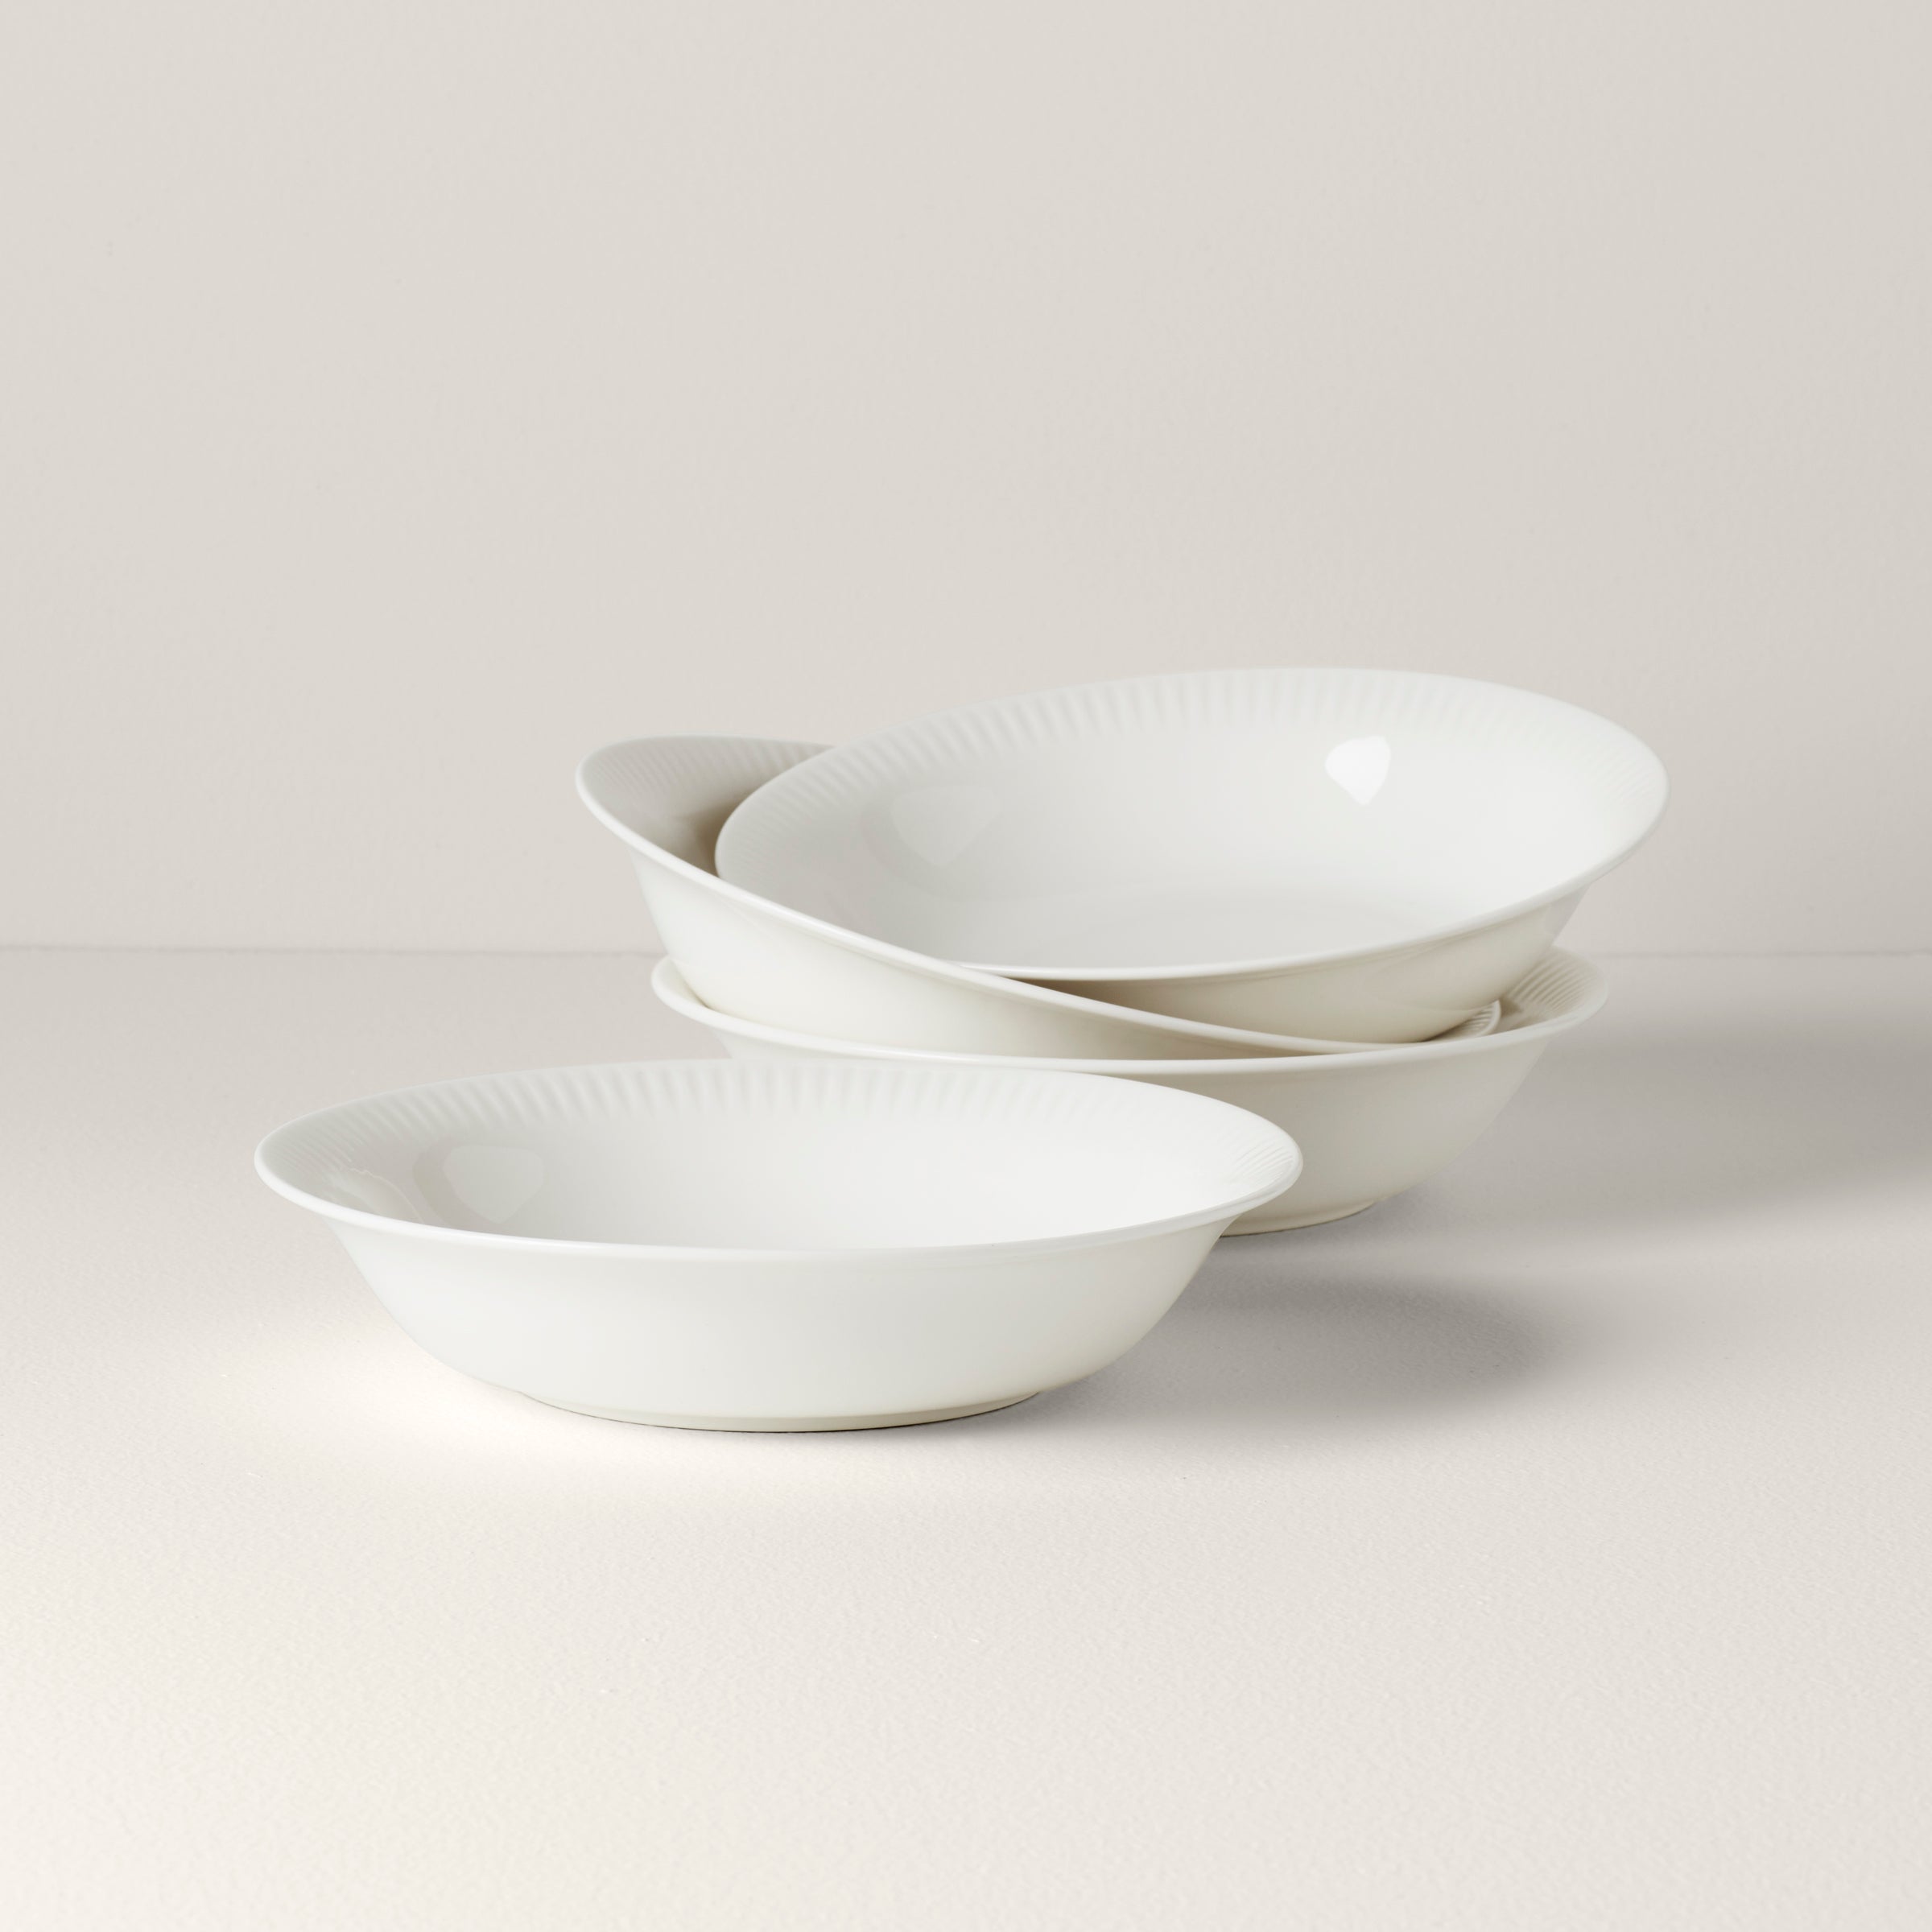 Better Homes & Gardens 5 Pieces Pasta Serve Bowl Set, Porcelain